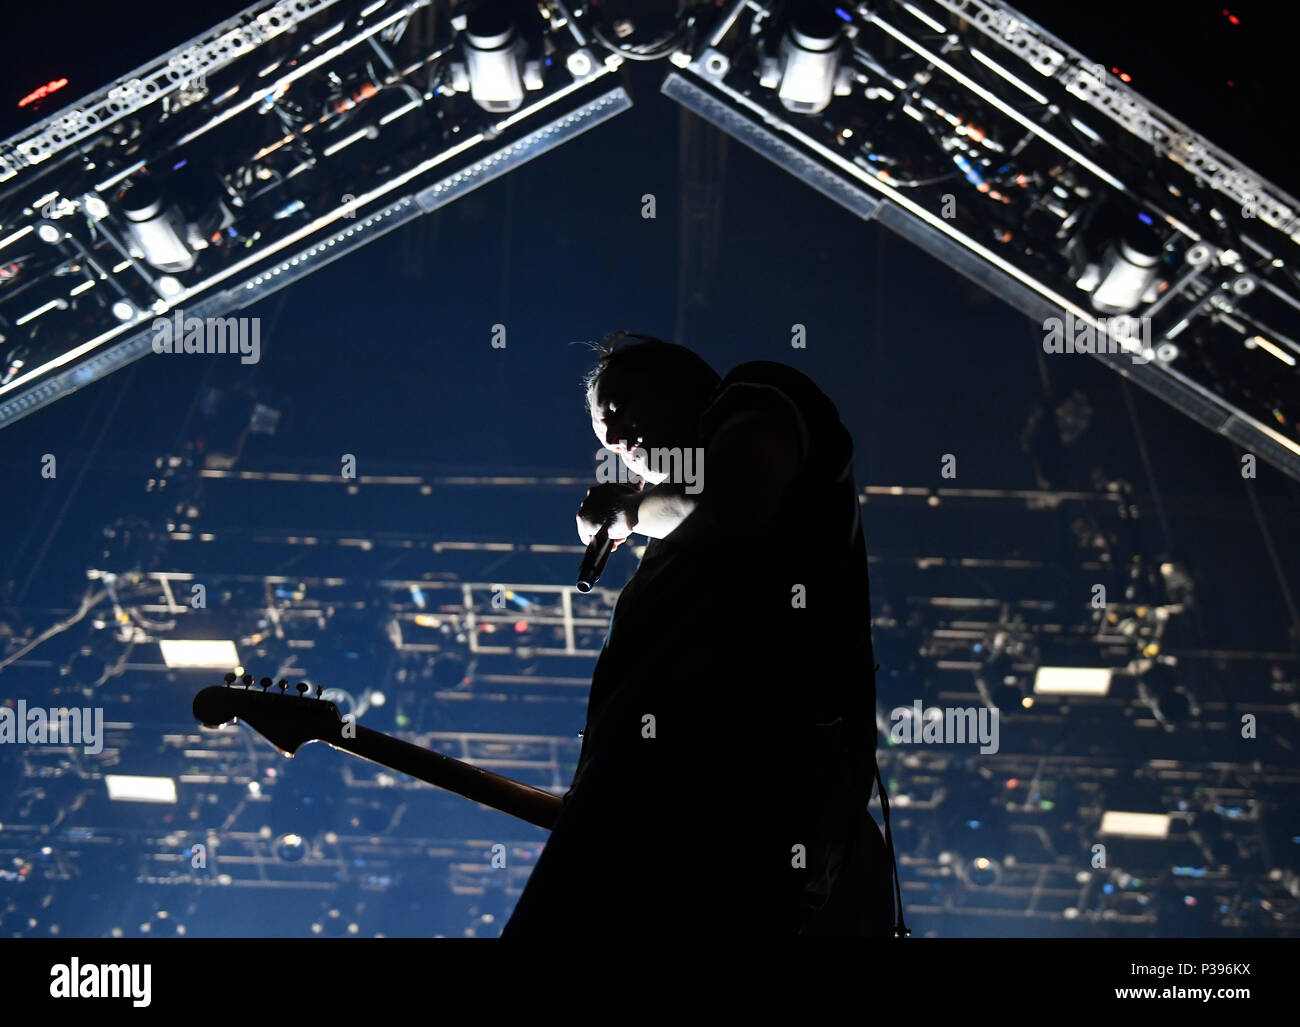 Prague, République tchèque. 15 Juin, 2018. Les concerts du groupe de rock indépendant Arcade Fire à Prague, en République tchèque, le 15 juin 2018. Photo : CTK Michal Krumphanzl/Photo/Alamy Live News Banque D'Images